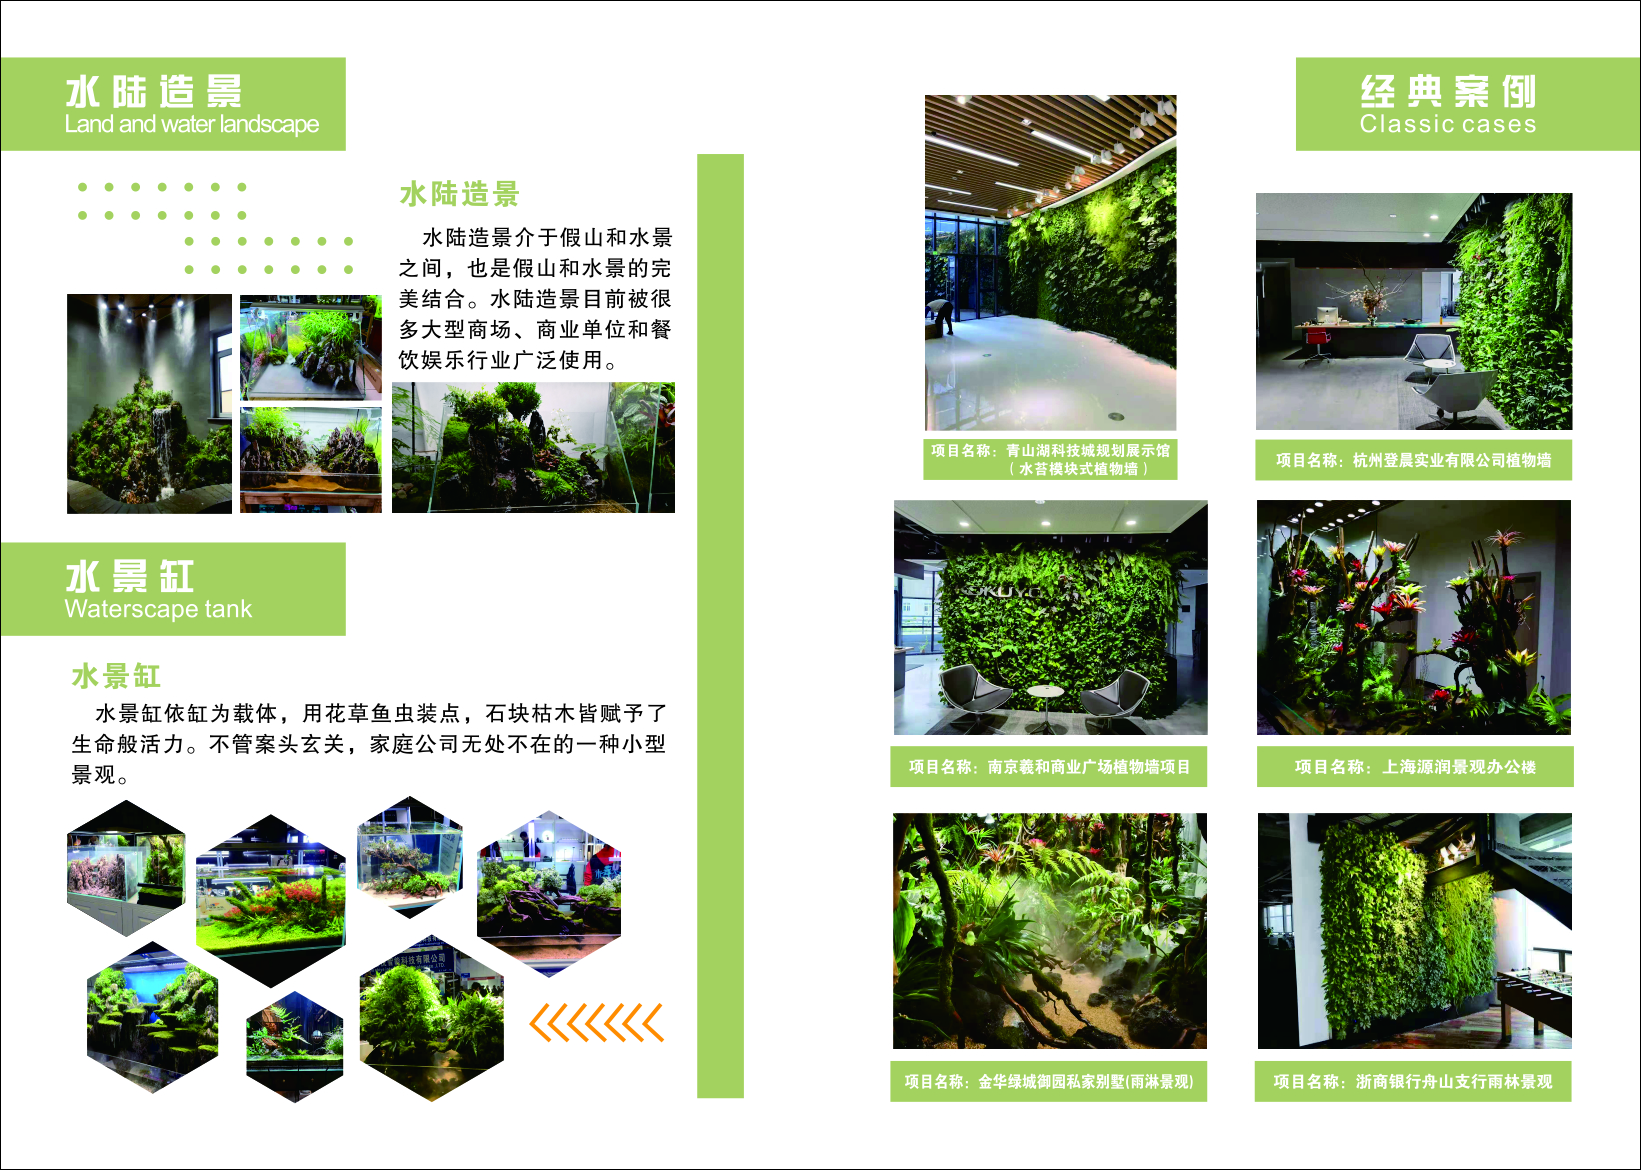 上海仿真绿雕制作 仿真景观绿雕